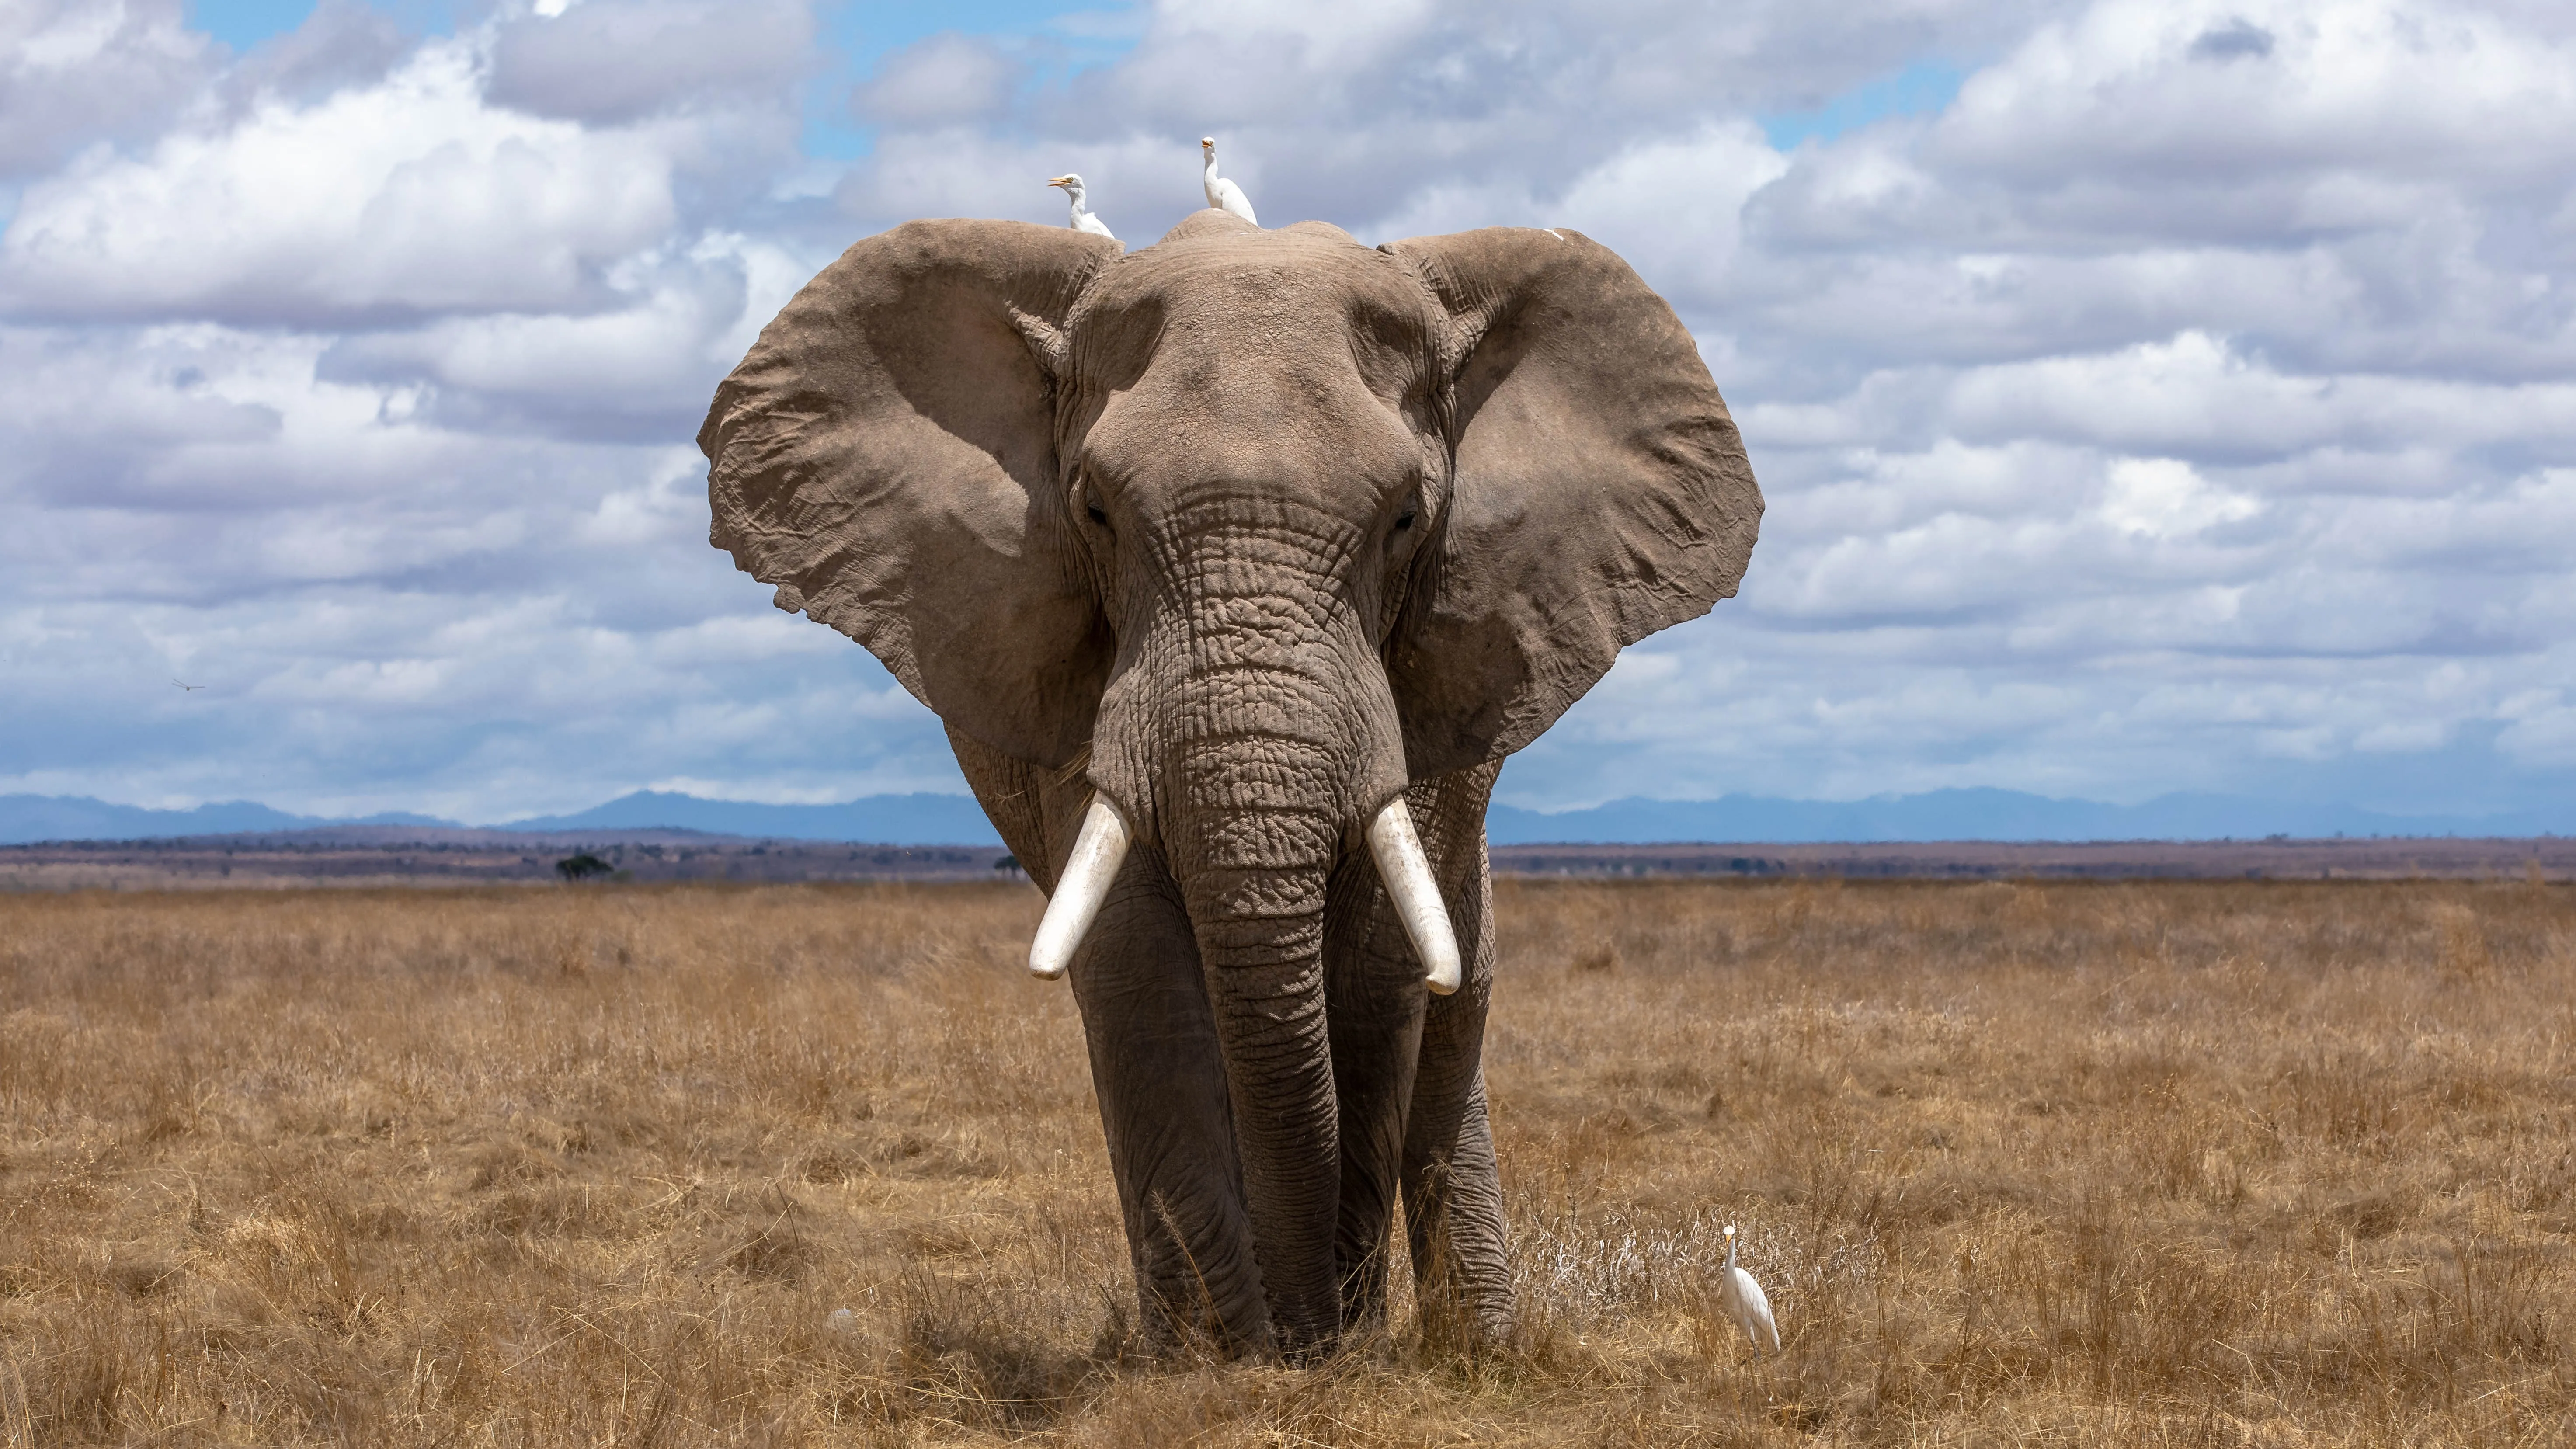 Азиатские слоны теперь признаны способными точно воспринимать собственные отражения в зеркале.